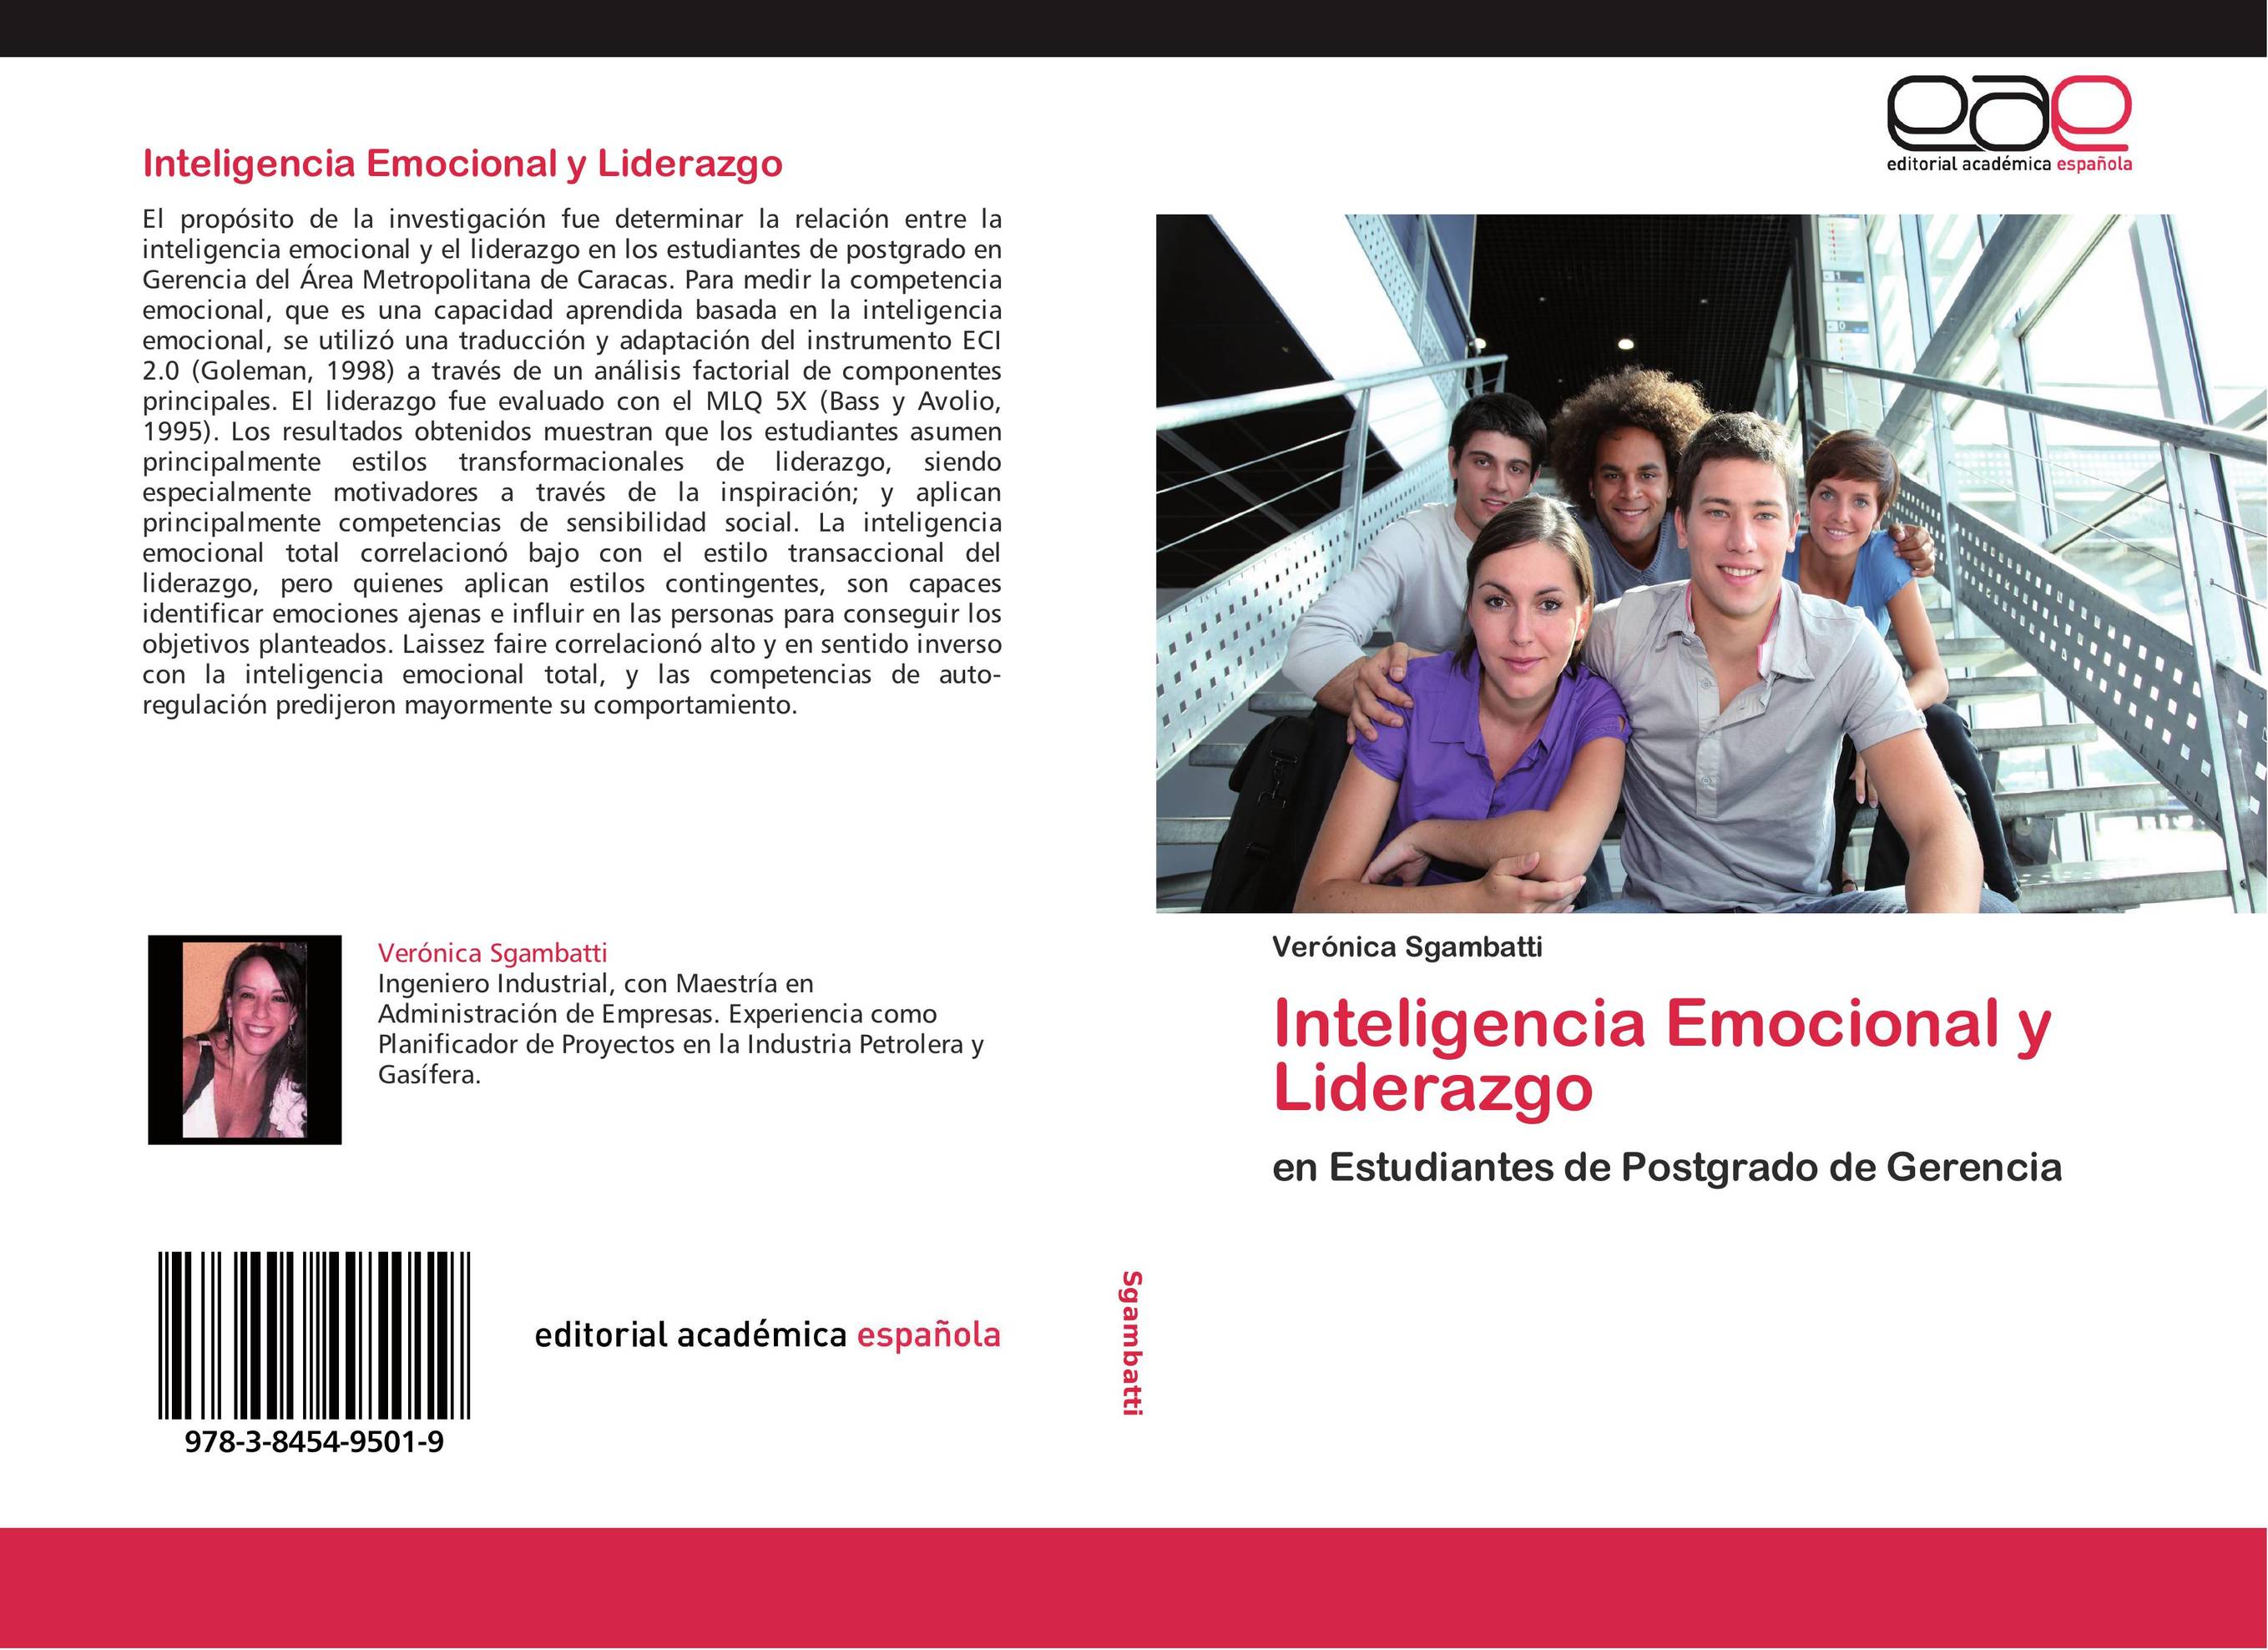 Inteligencia Emocional y Liderazgo